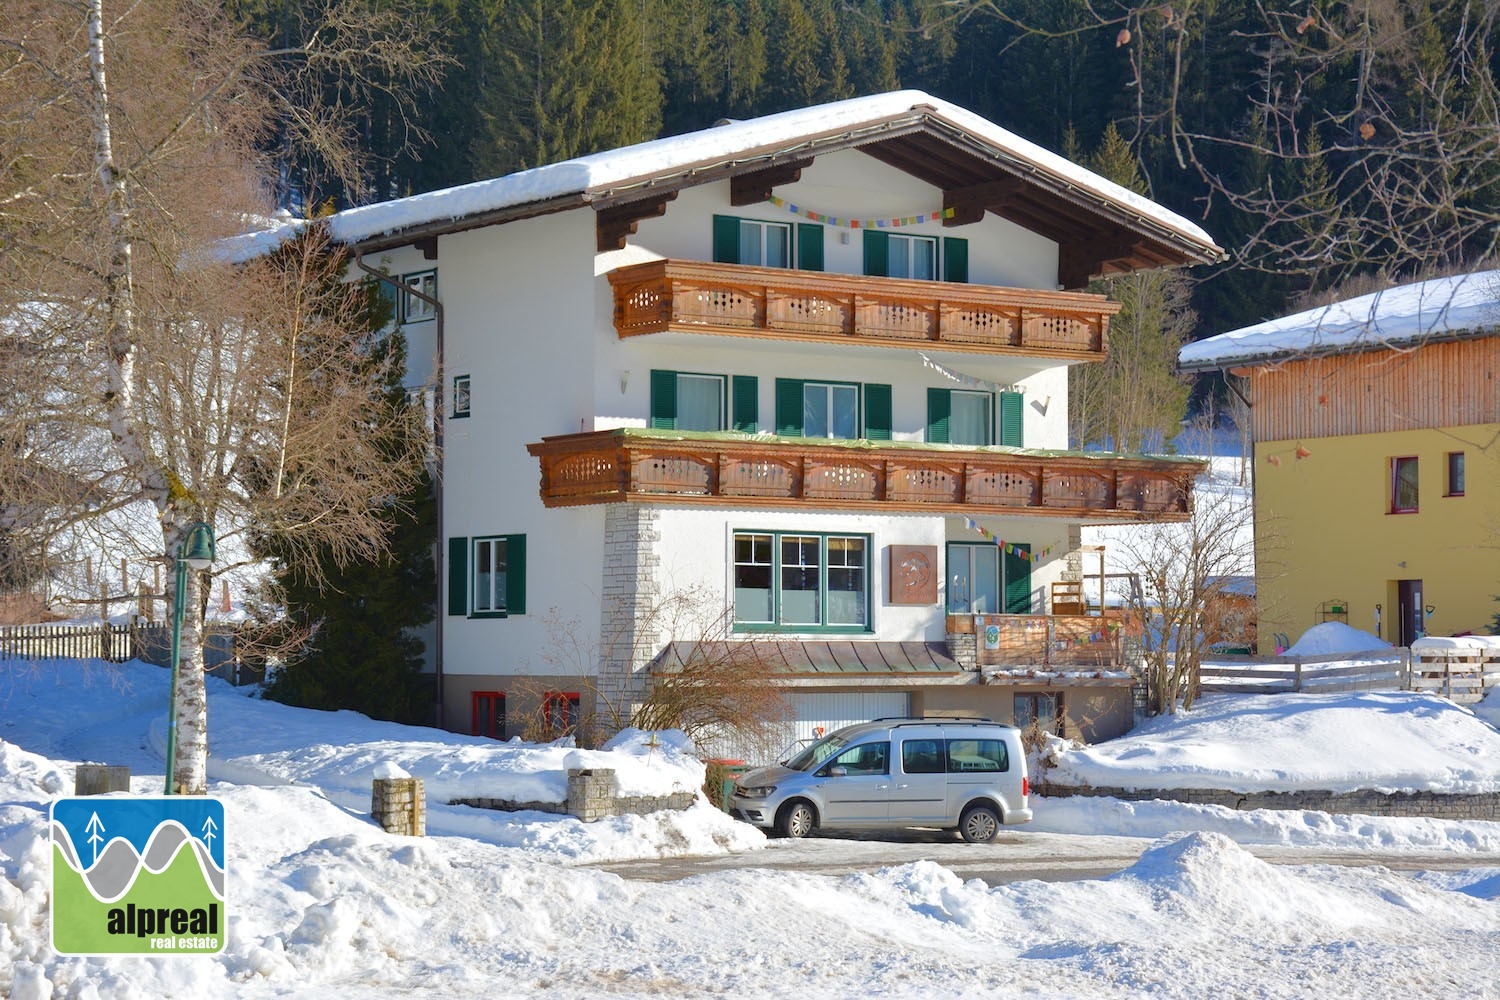 Apartmenthaus mit 3 Fewos und 2 Zimmer St Martin am Tennengebirge Salzburg Österreich